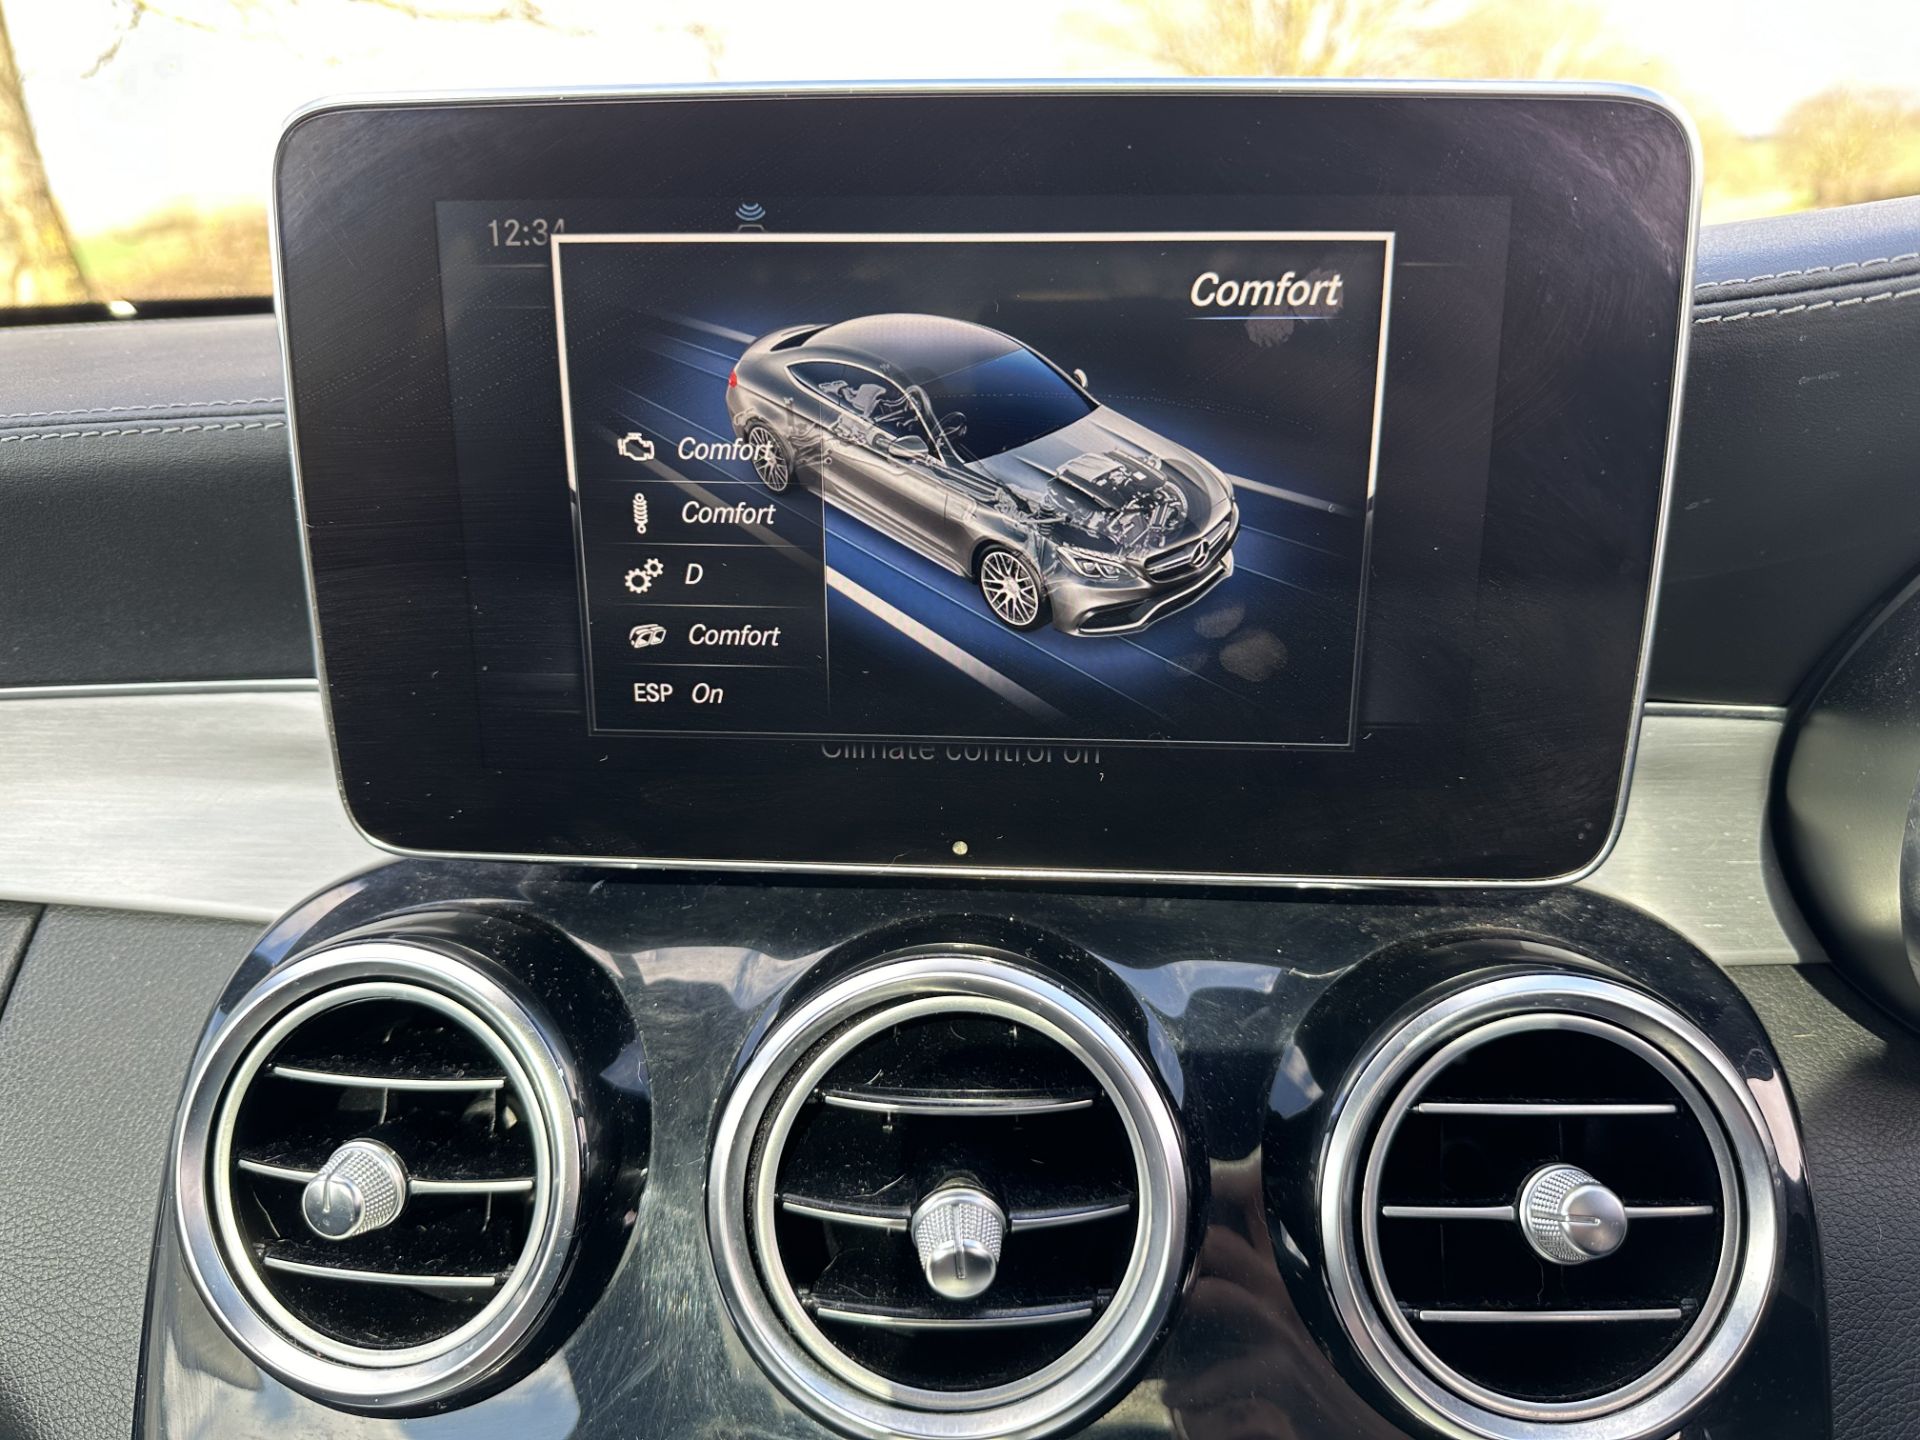 MERCEDES-BENZ C CLASS C63 Premium 2dr Coupe "Auto " (2019 Model) Automatic - 59K miles - SH PRINT - Image 21 of 21